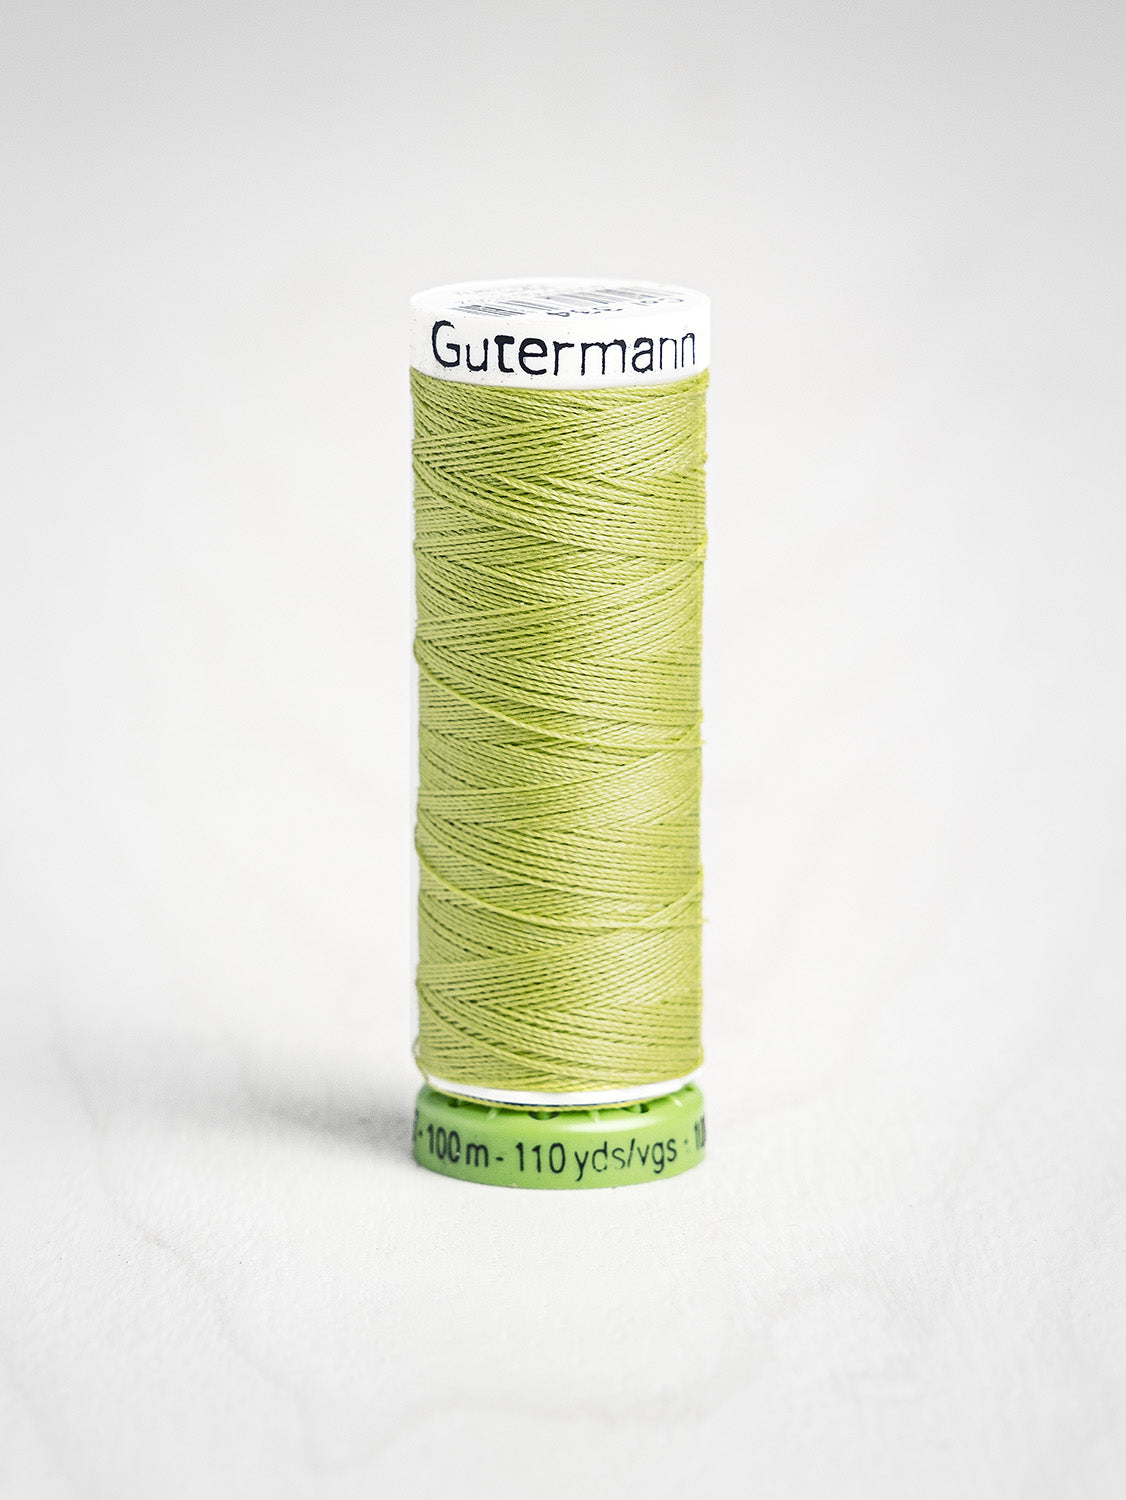 Gutermann Thread Basic Colours All Purpose Sewing Thread, 100m